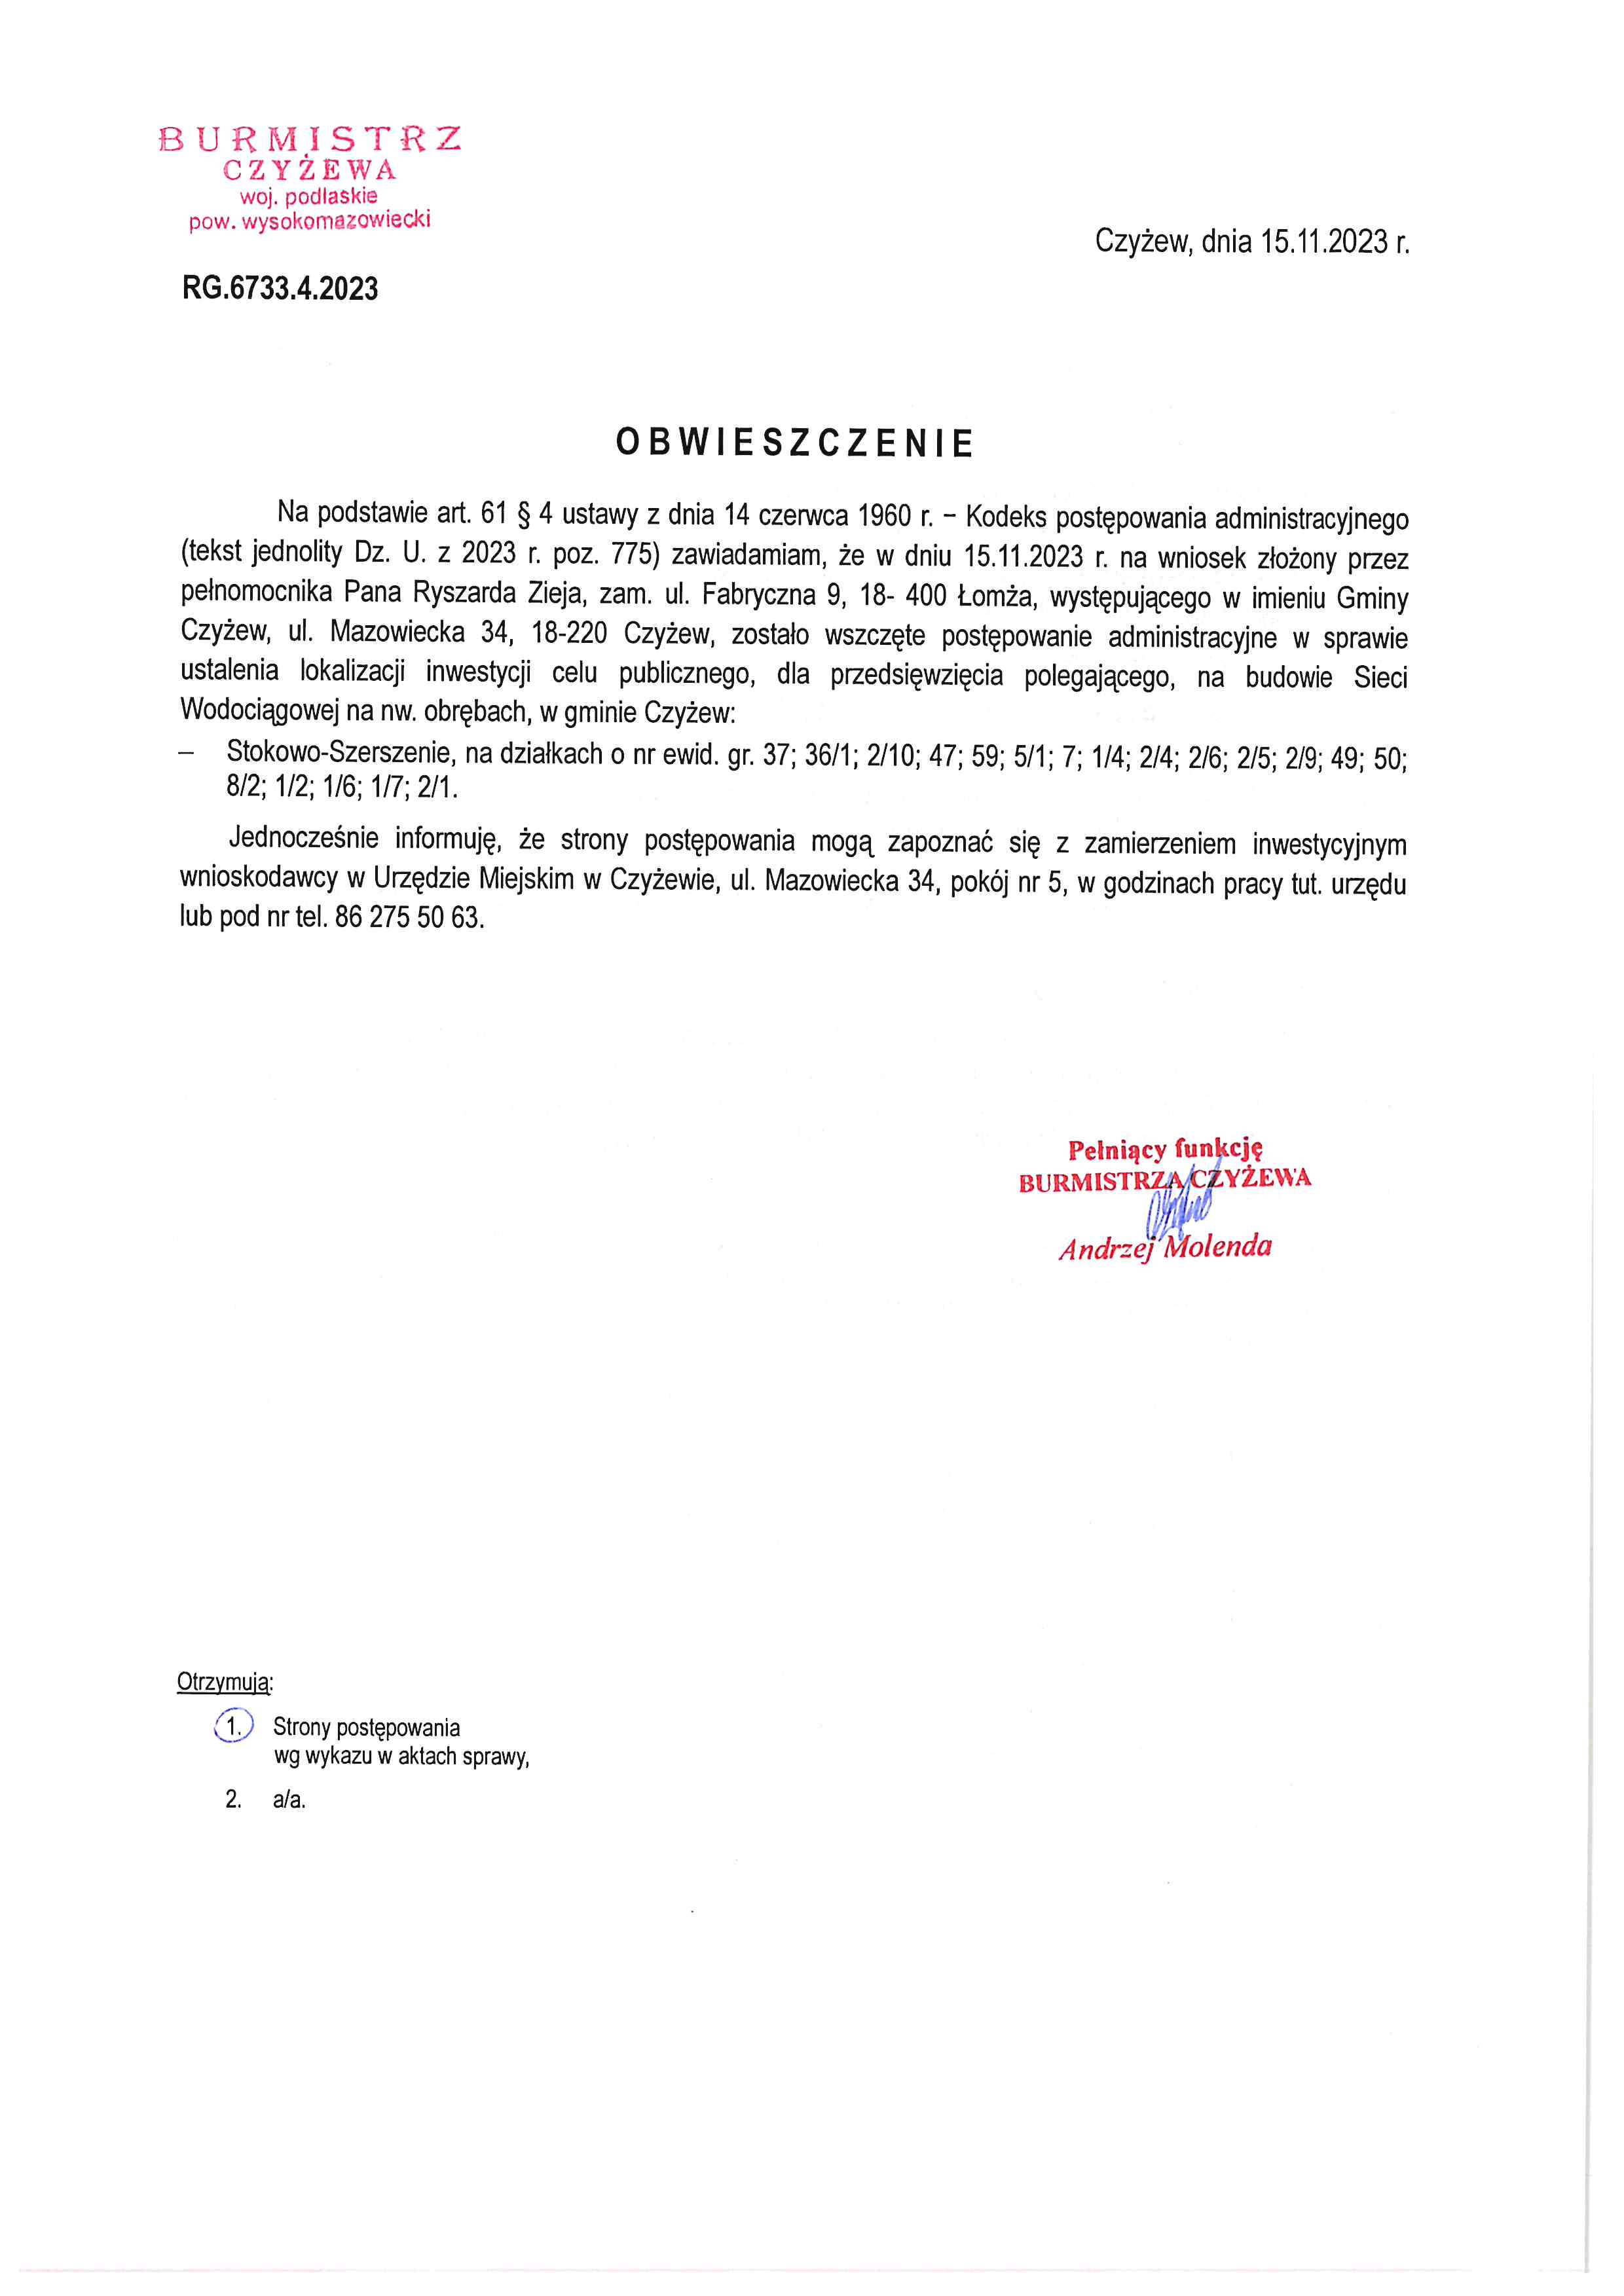 Obwieszczenie Burmistrza Czyżewa z dn. 15.11.23.jpg